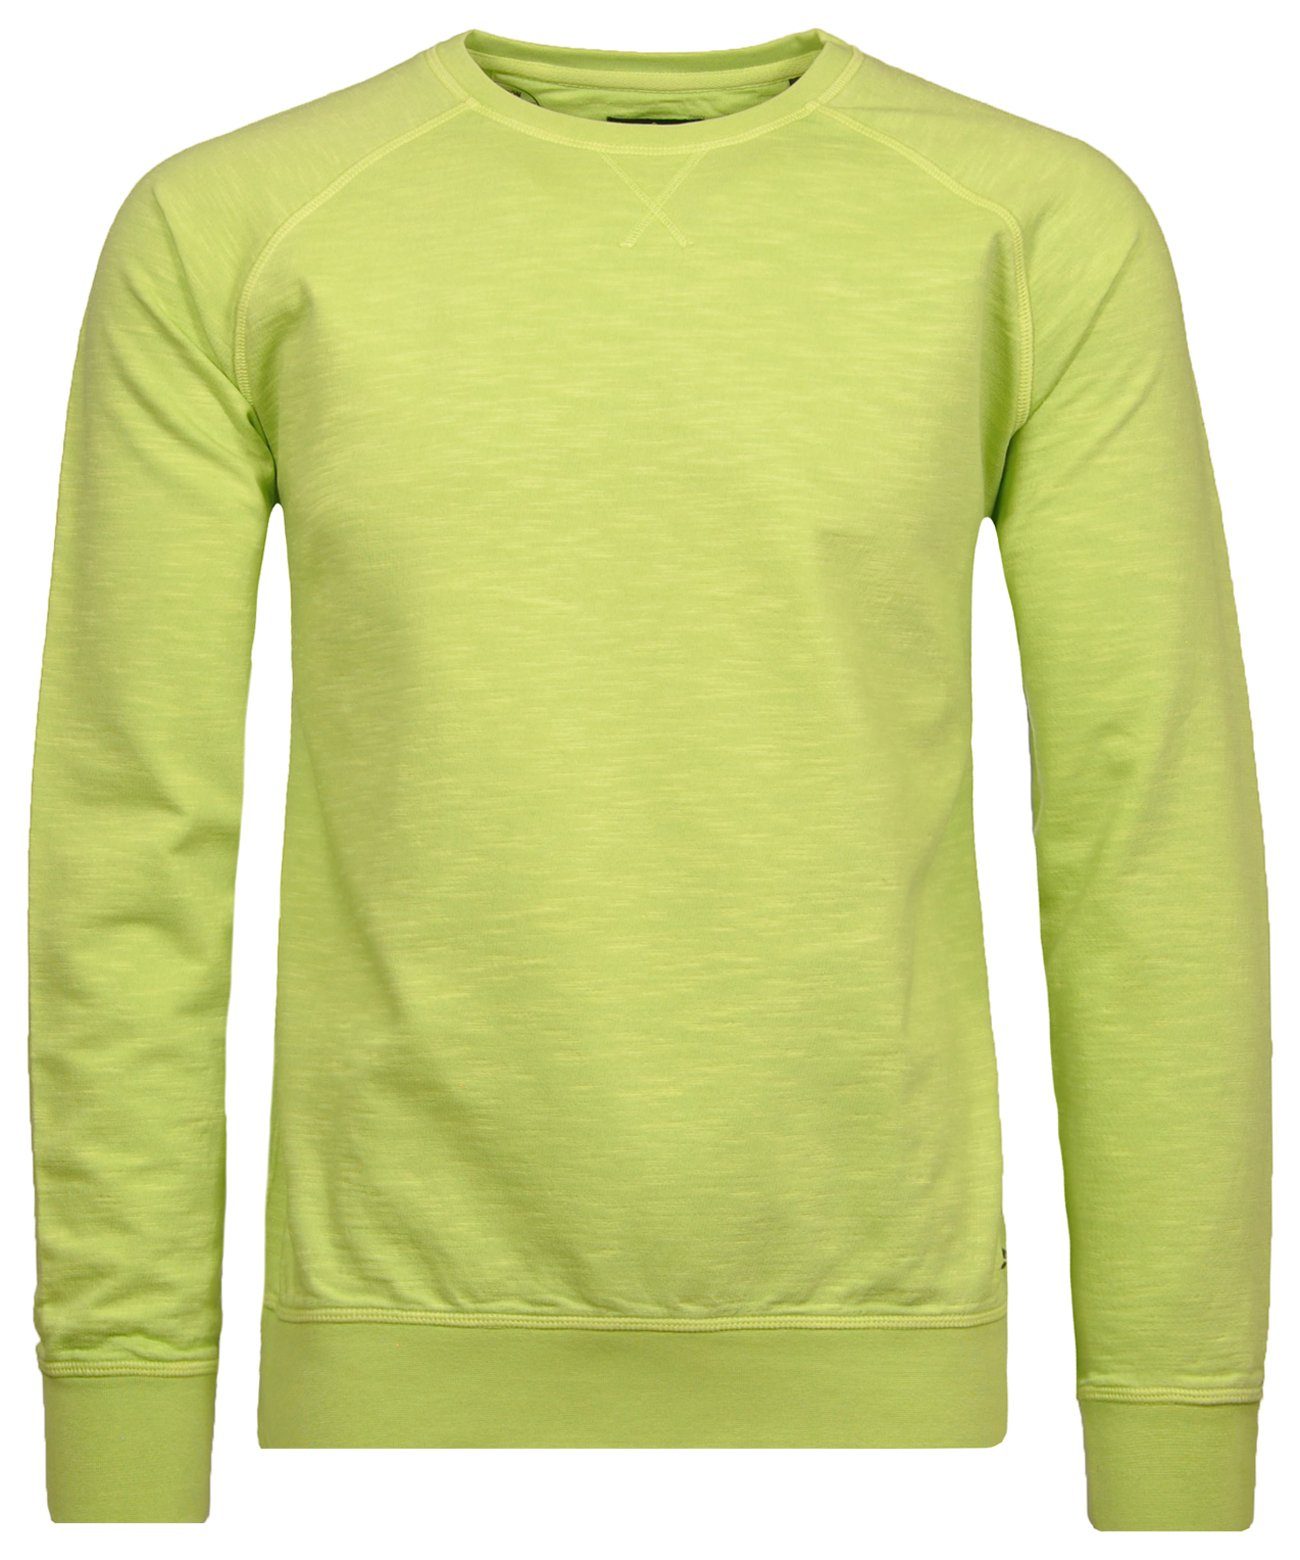 RAGMAN Sweatshirt Neon grün-302